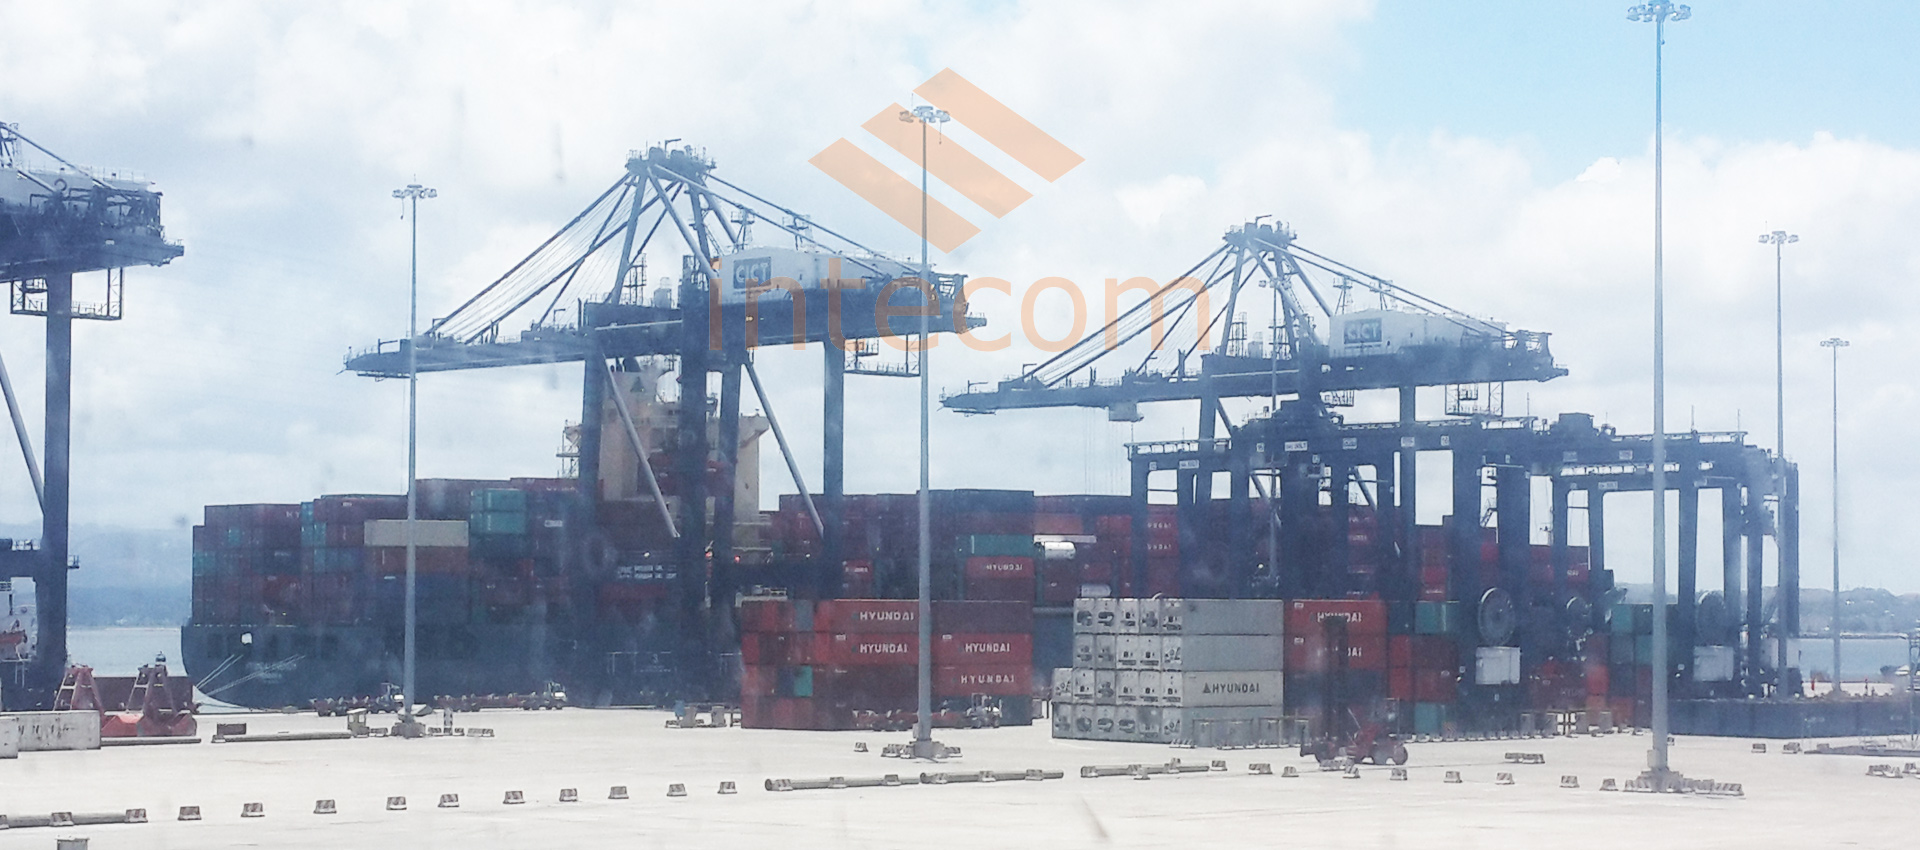 Khai thác hàng Container tại cảng CICT